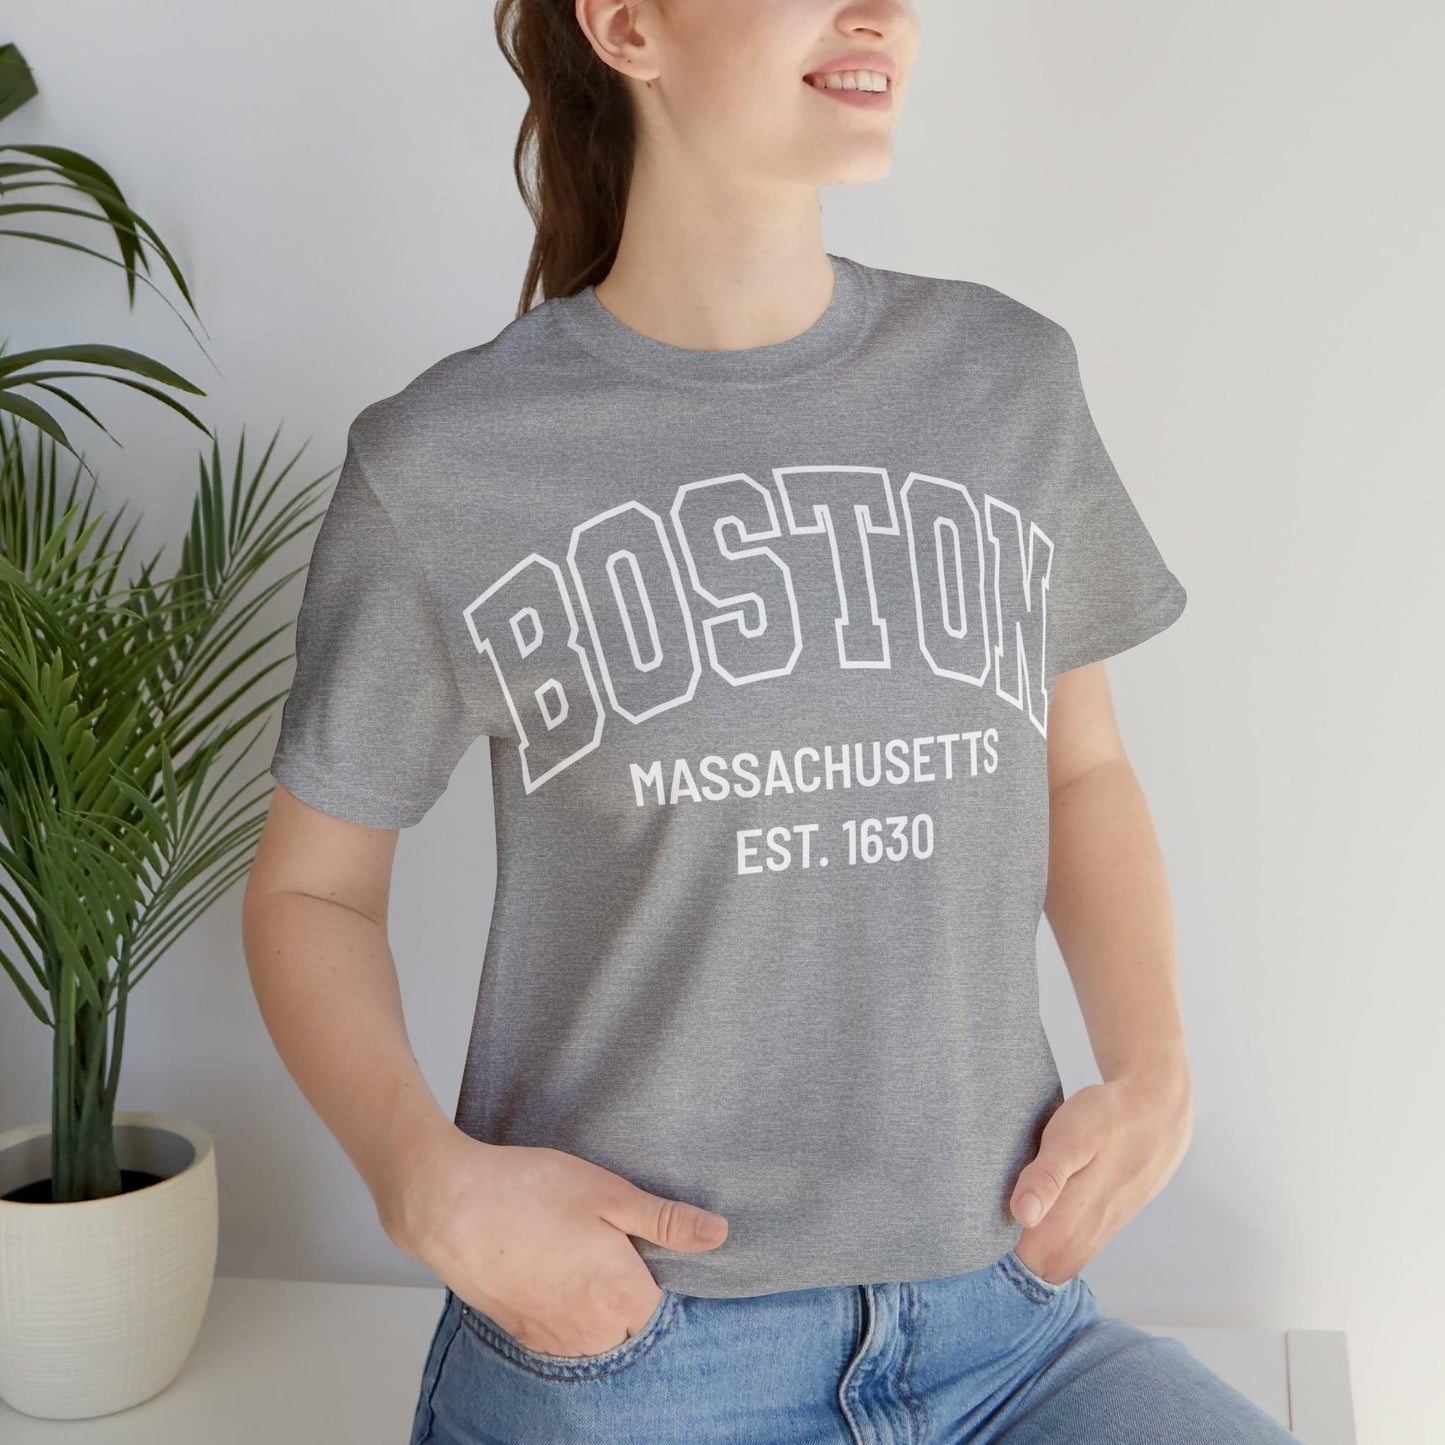 Boston Massachusetts Shirt, Boston Souvenir, Boston shirt, Boston Tshirt, Boston Vacation shirt